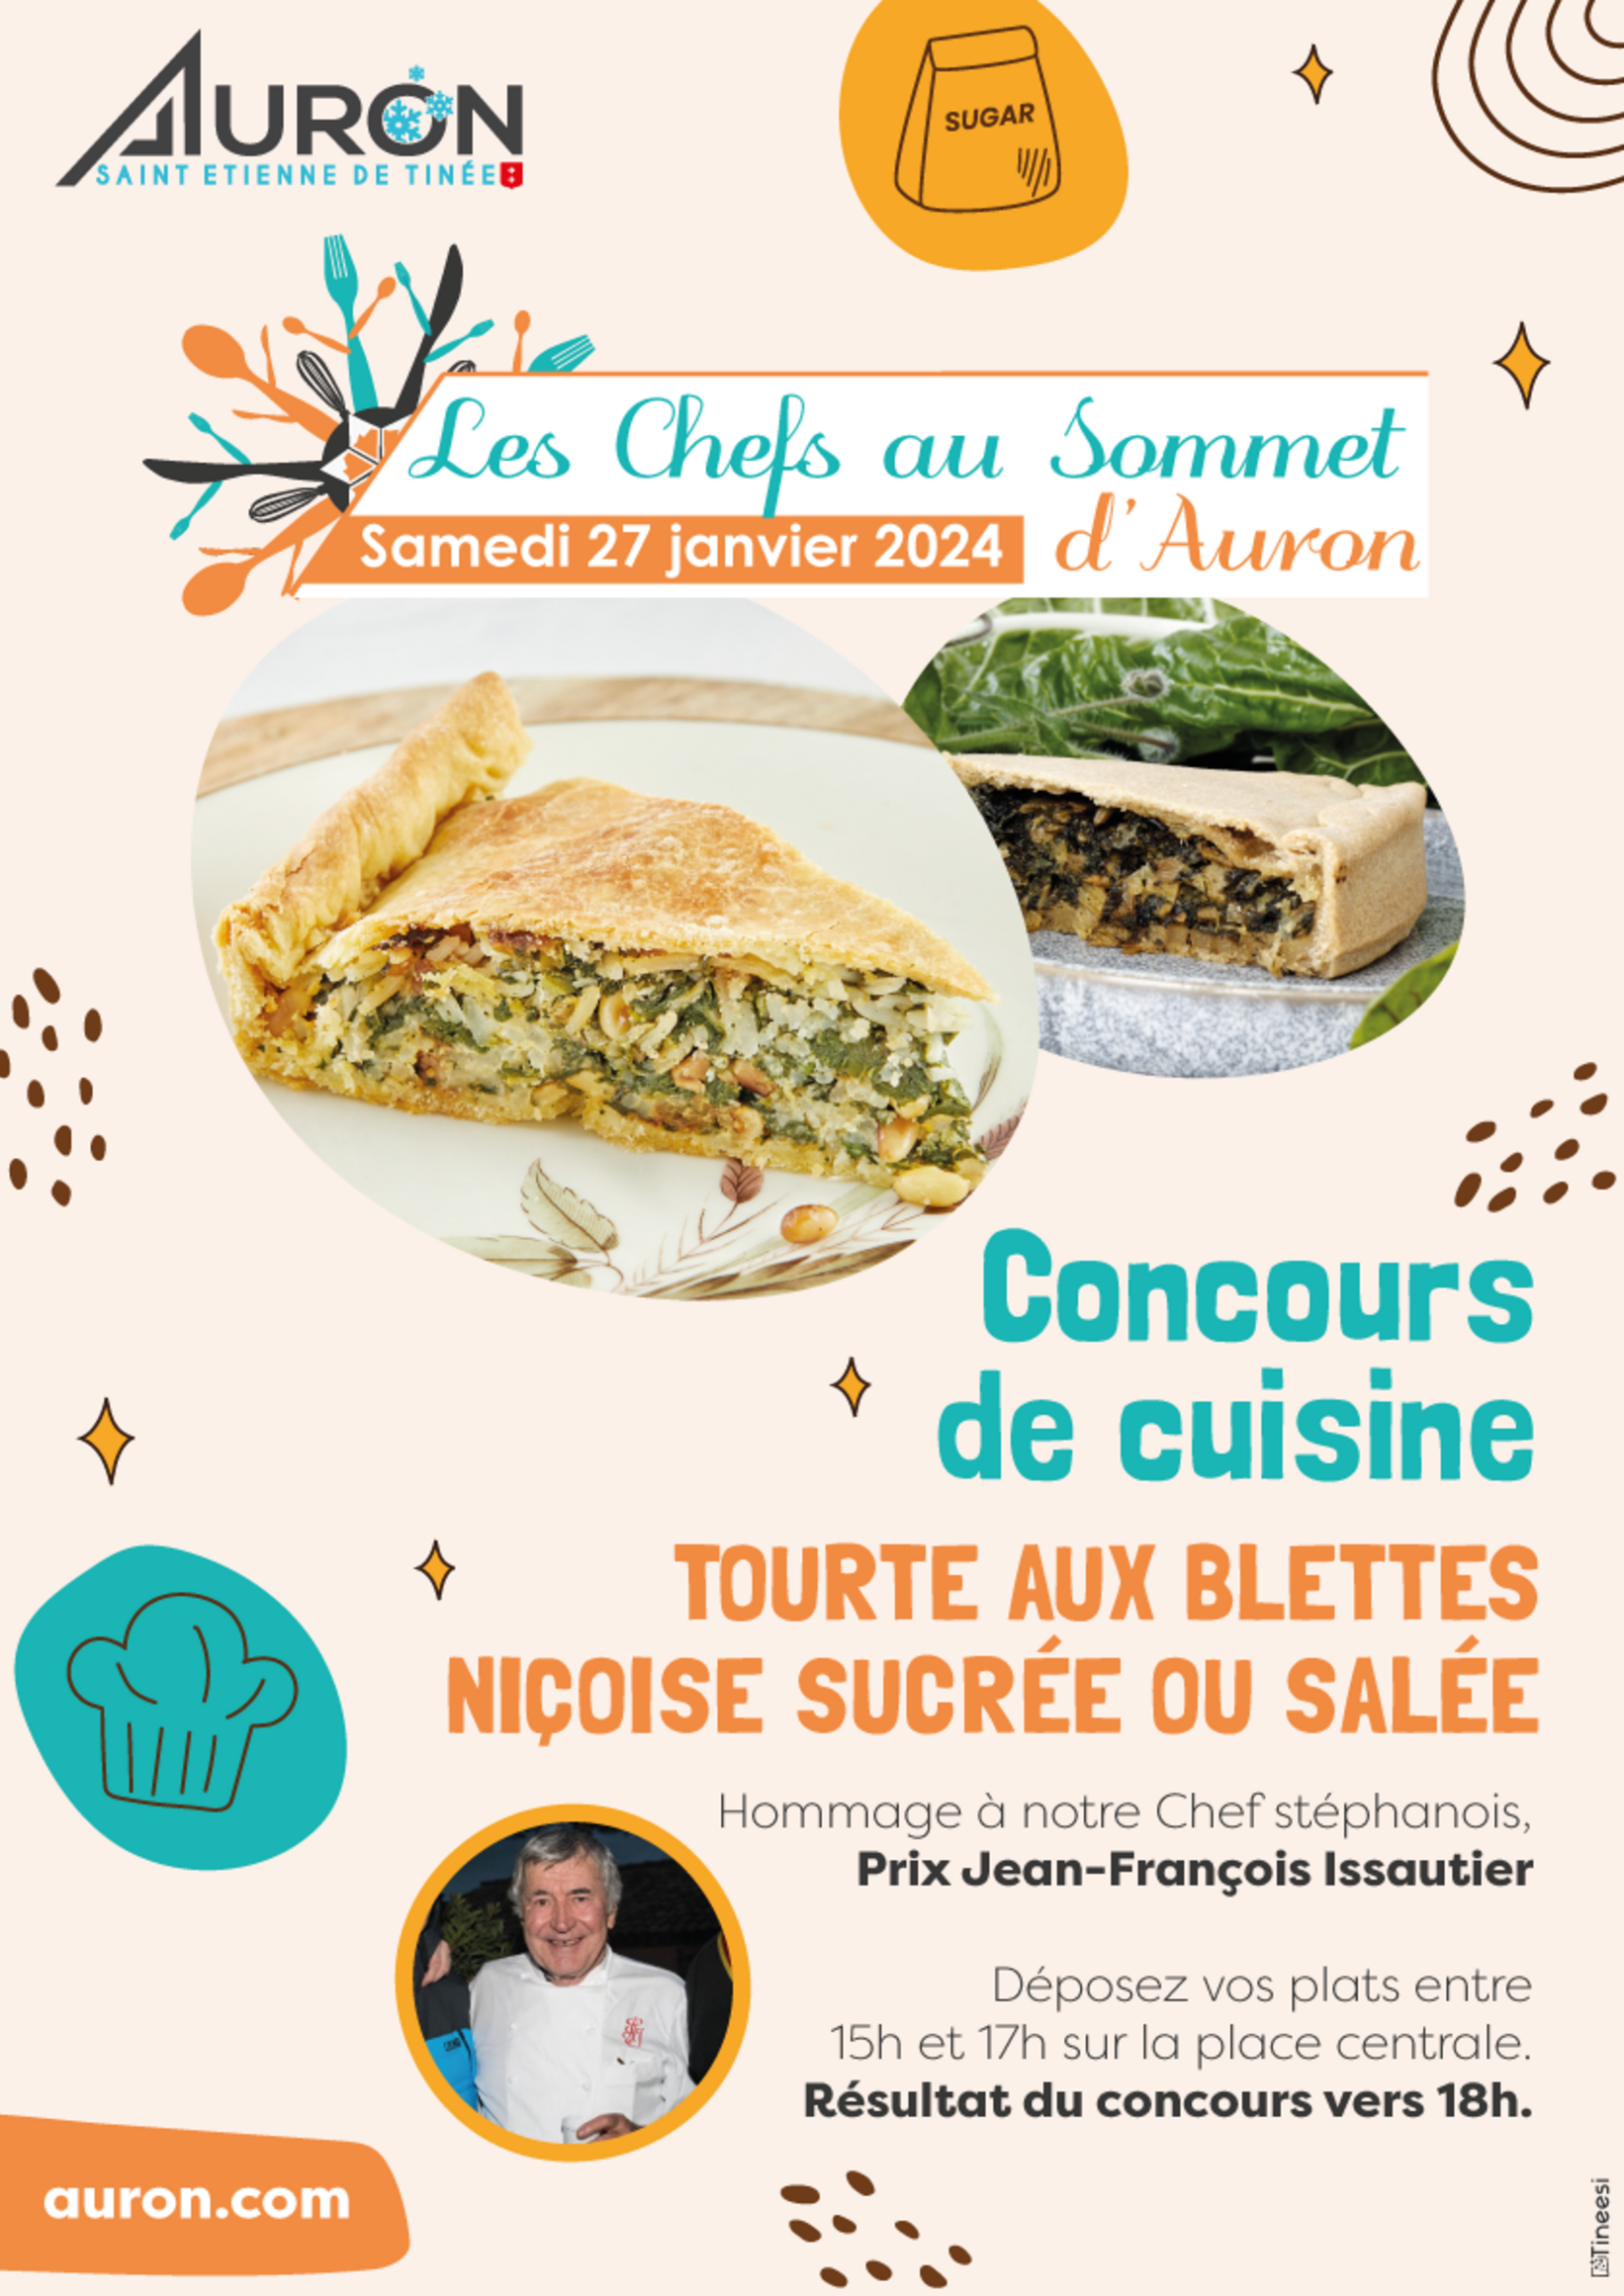 Concours de cuisine Tourte aux Blettes, (événement à Auron